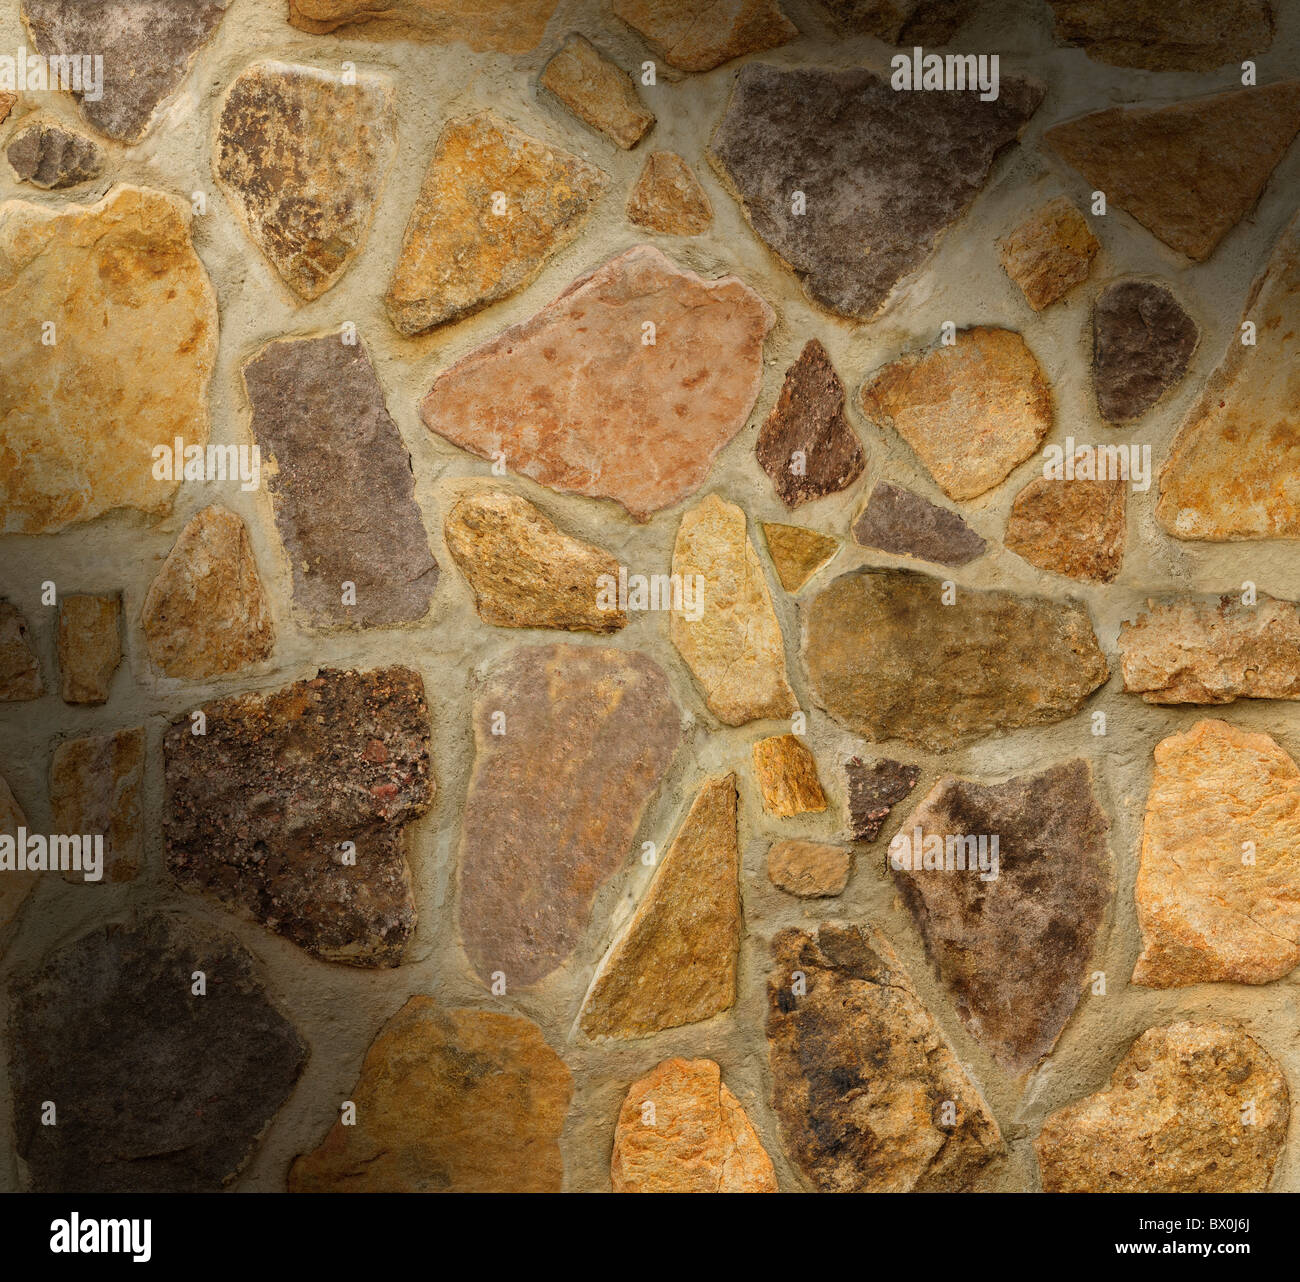 Mur de maçonnerie avec des pierres de forme irrégulière allumé de façon spectaculaire en diagonale Banque D'Images